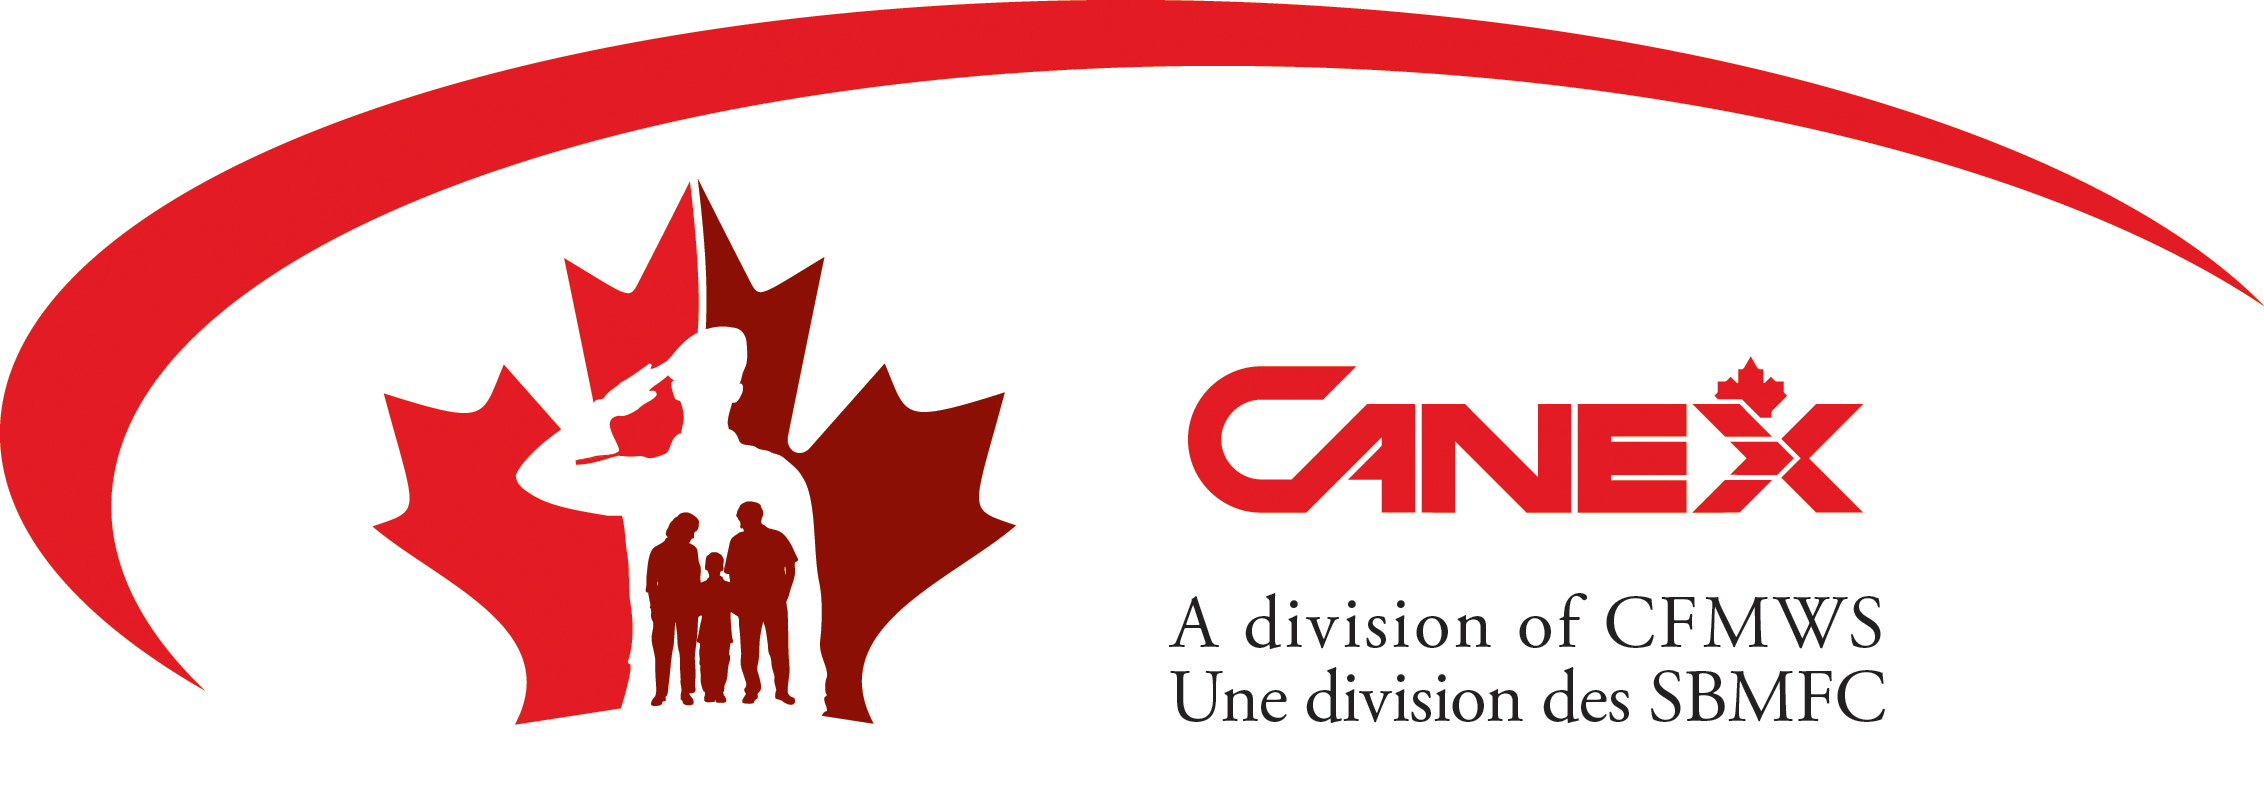 canex-medium-logo-w-acronym.jpg